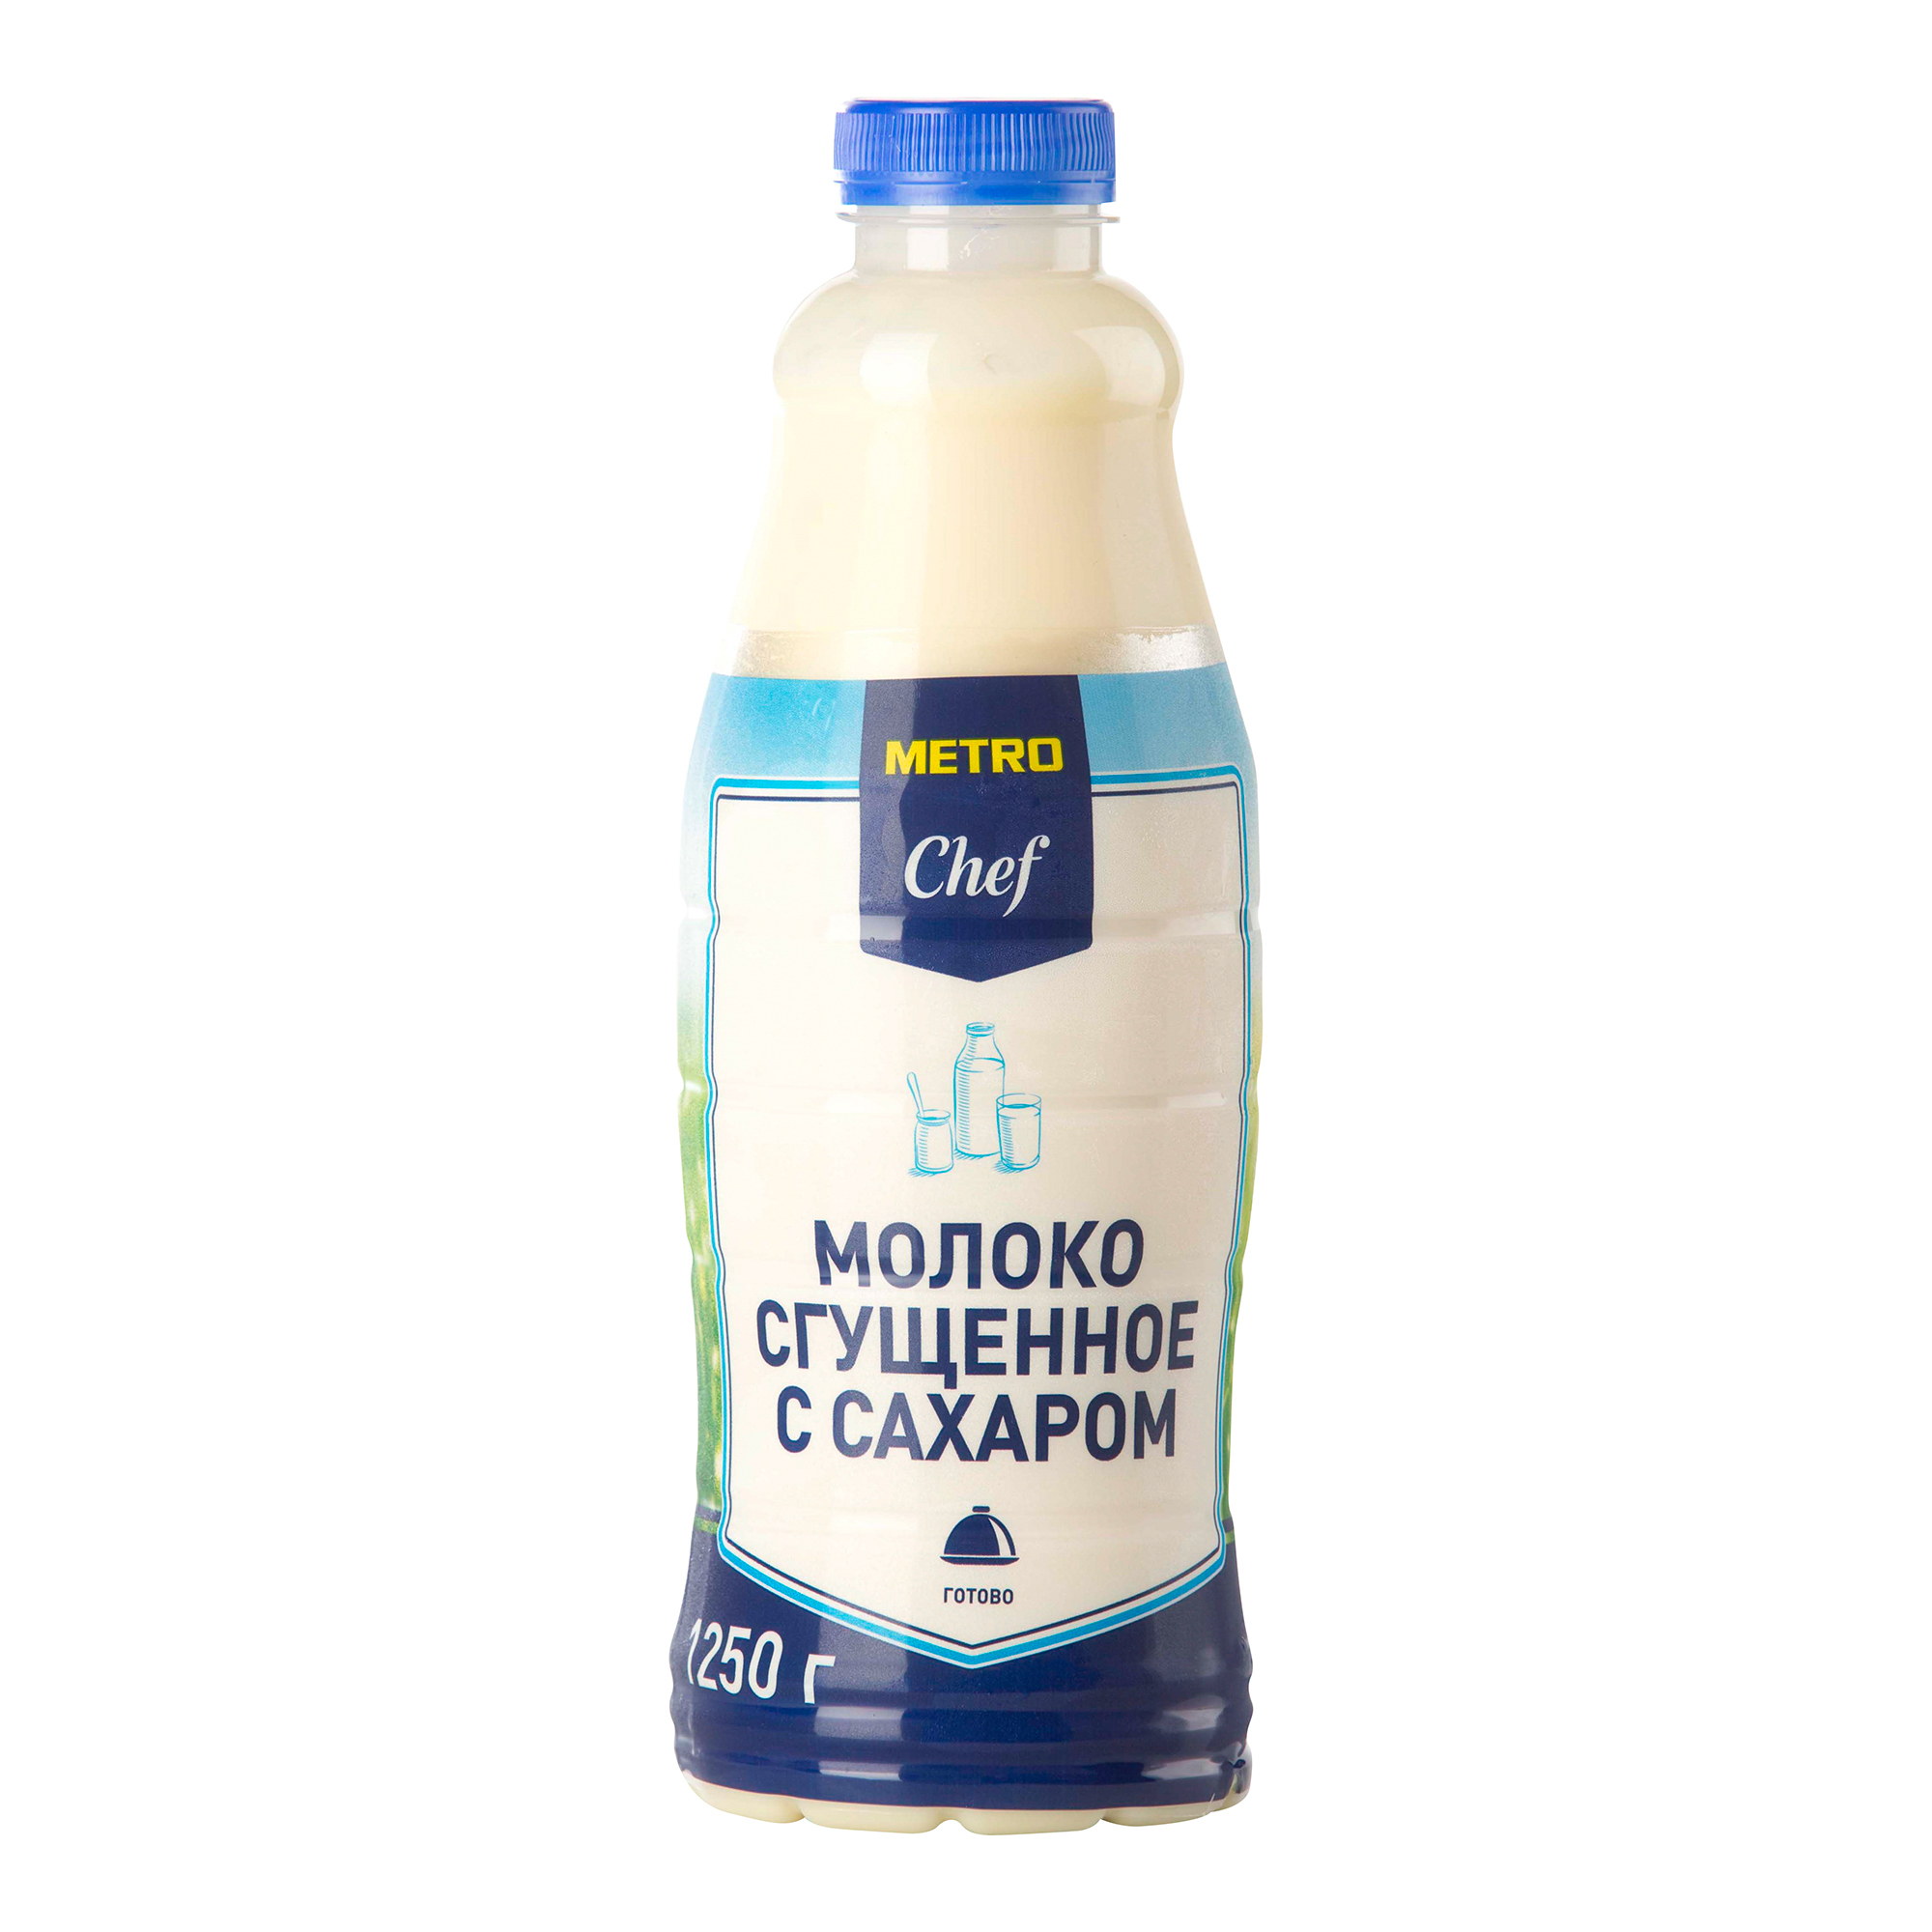 Сгущенное молоко Metro Chef 0,2% 1250 г